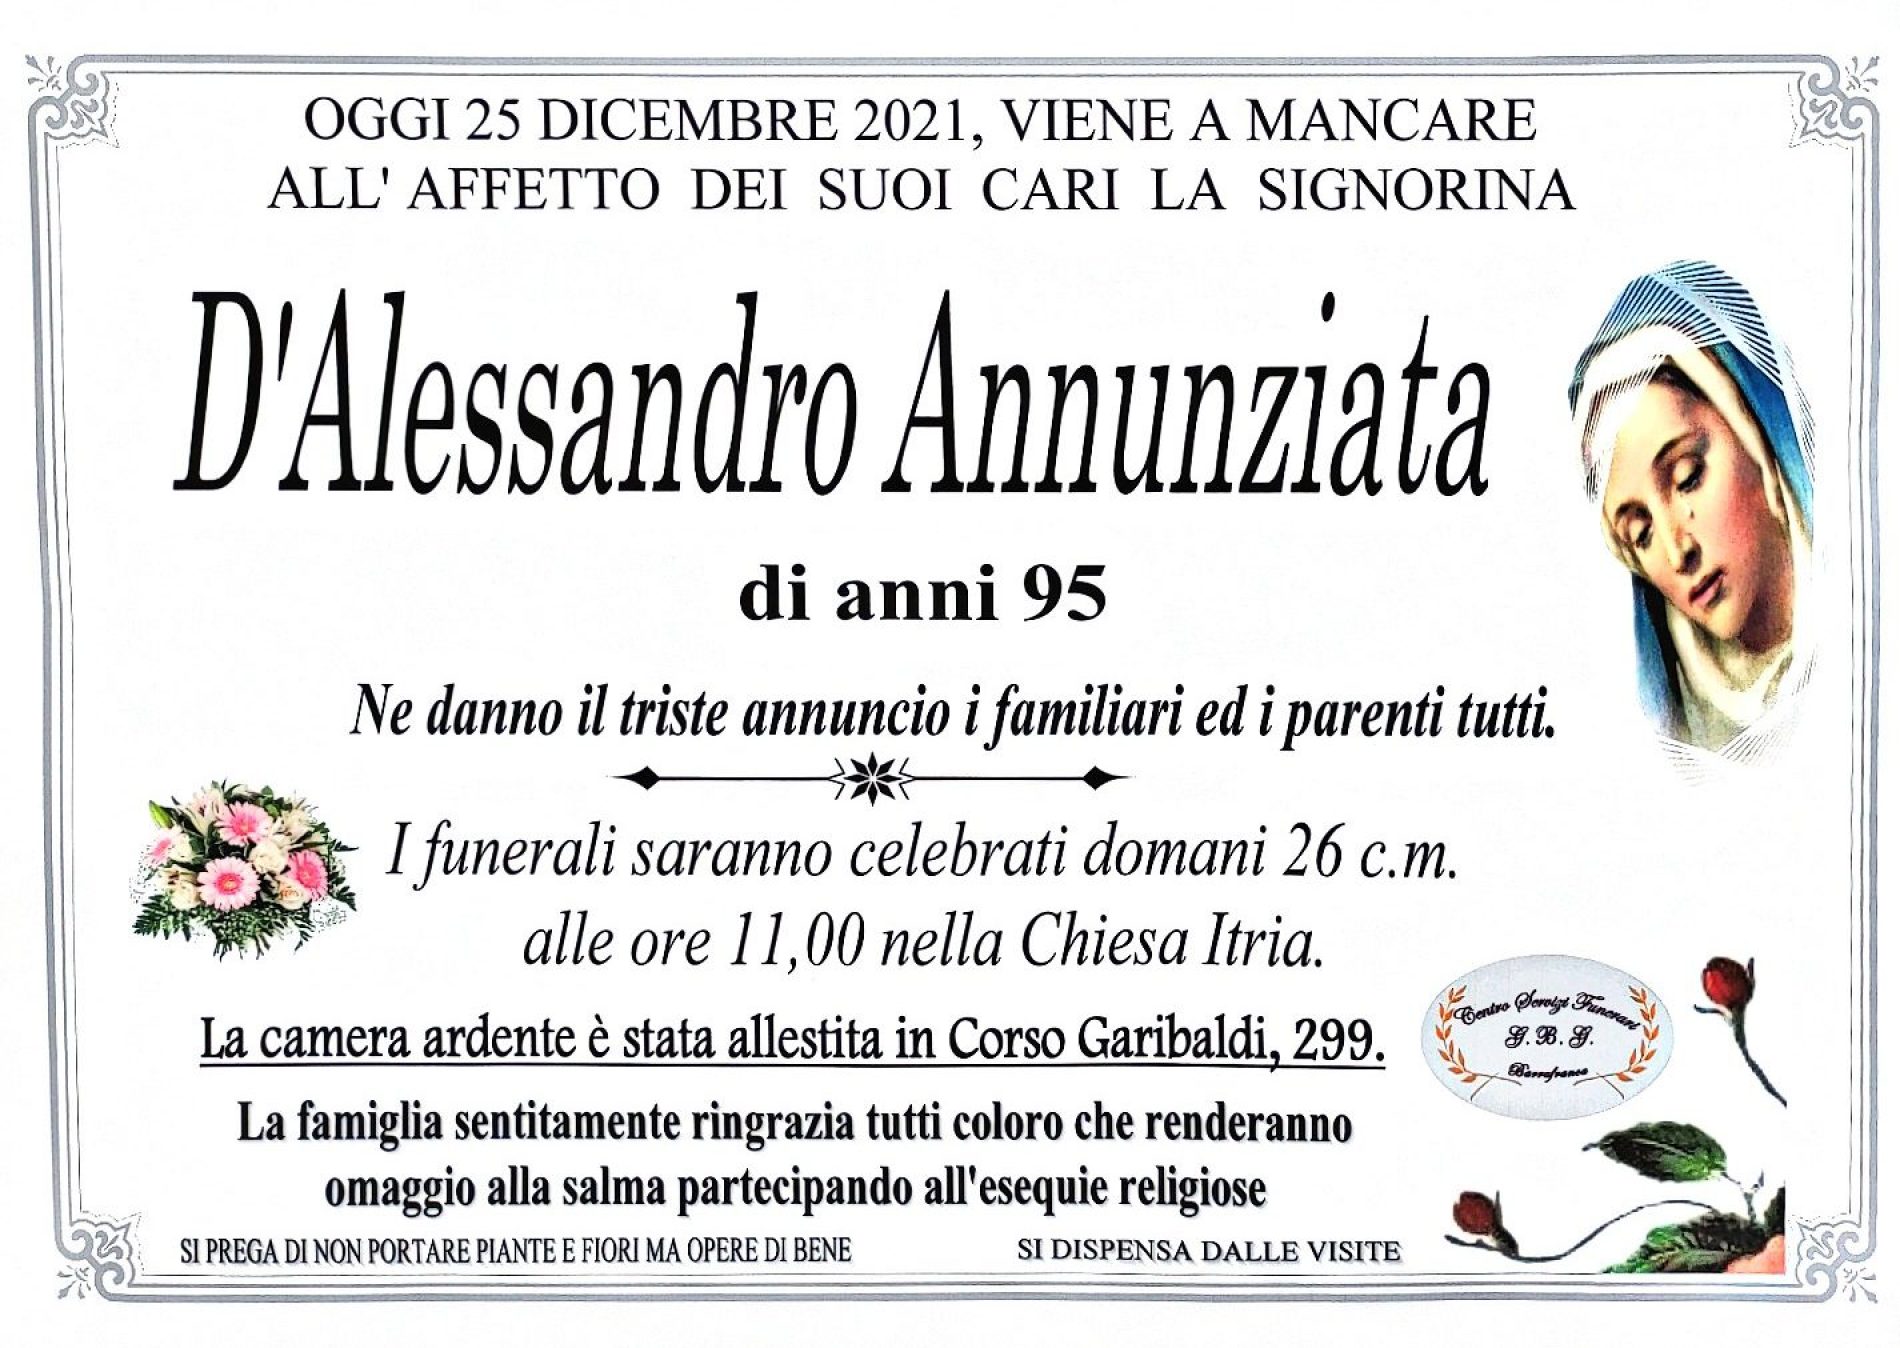 Annuncio servizi funerari agenzia G.B.G. sig.ra D’Alessandro Annunziata di anni 95